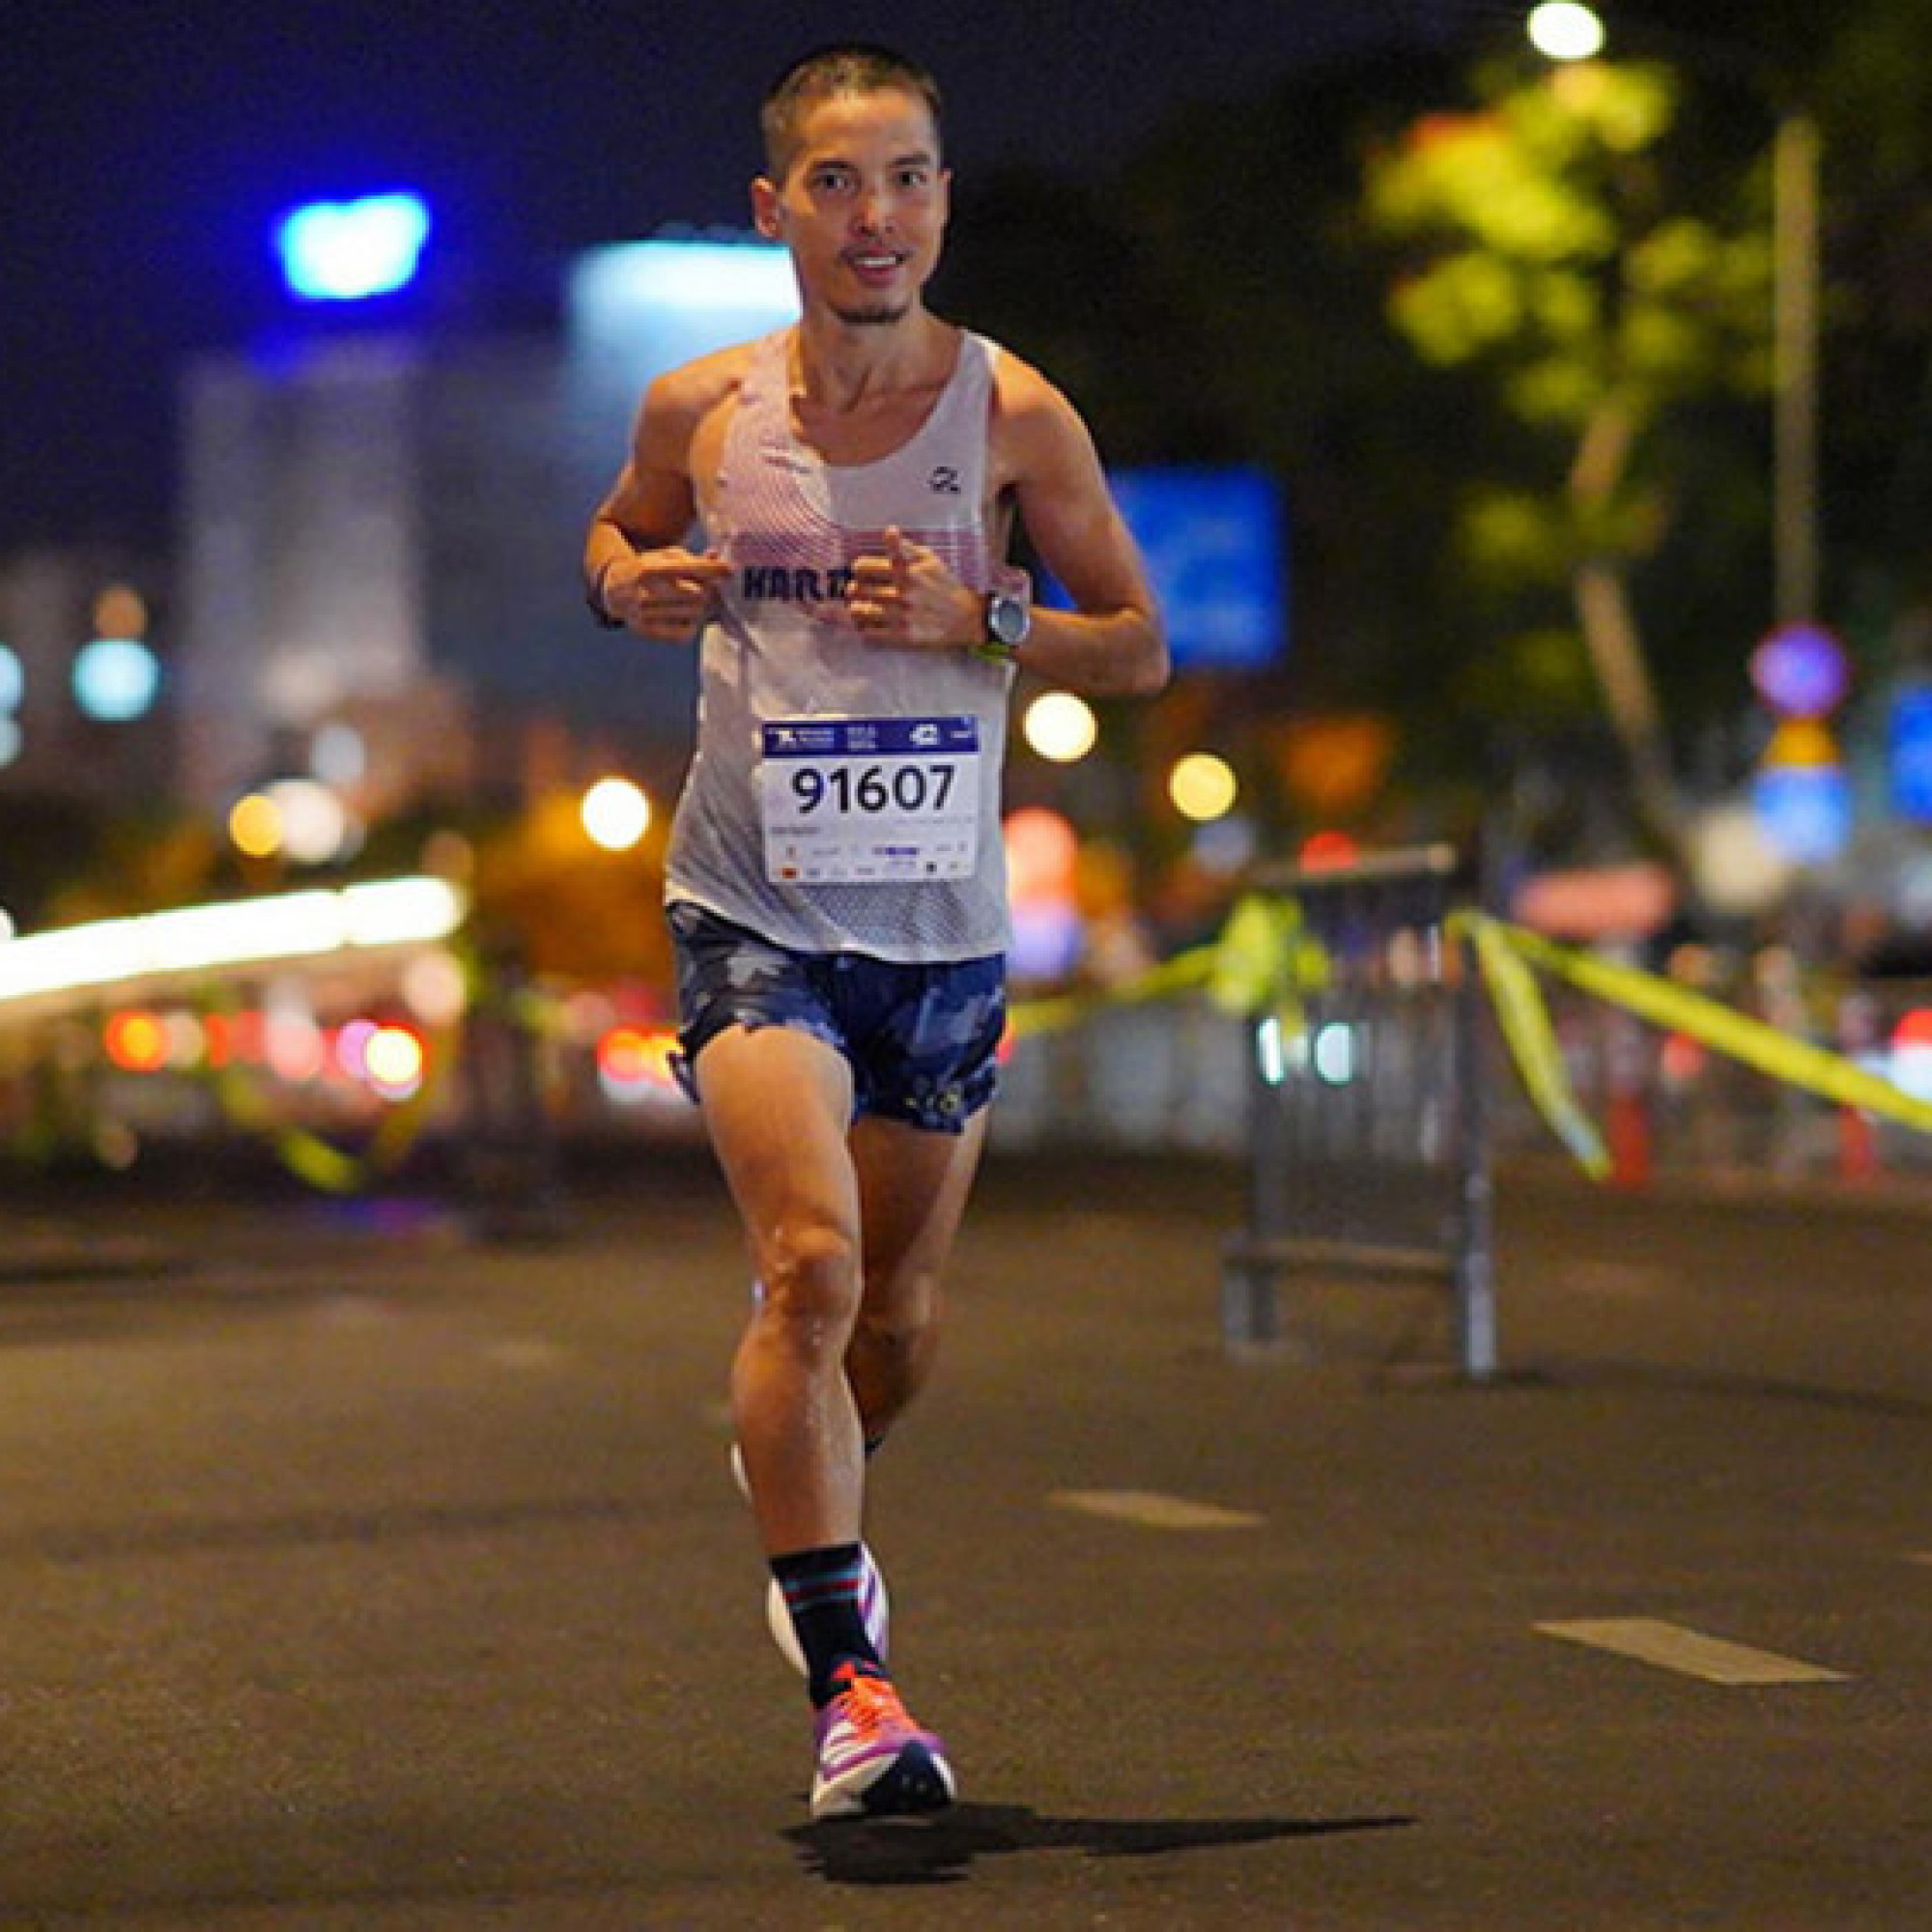  - “Siêu nhân” Nguyễn Đăng Hiếu phá kỷ lục Đông Nam Á, chạy hơn 230 km trong 24 giờ